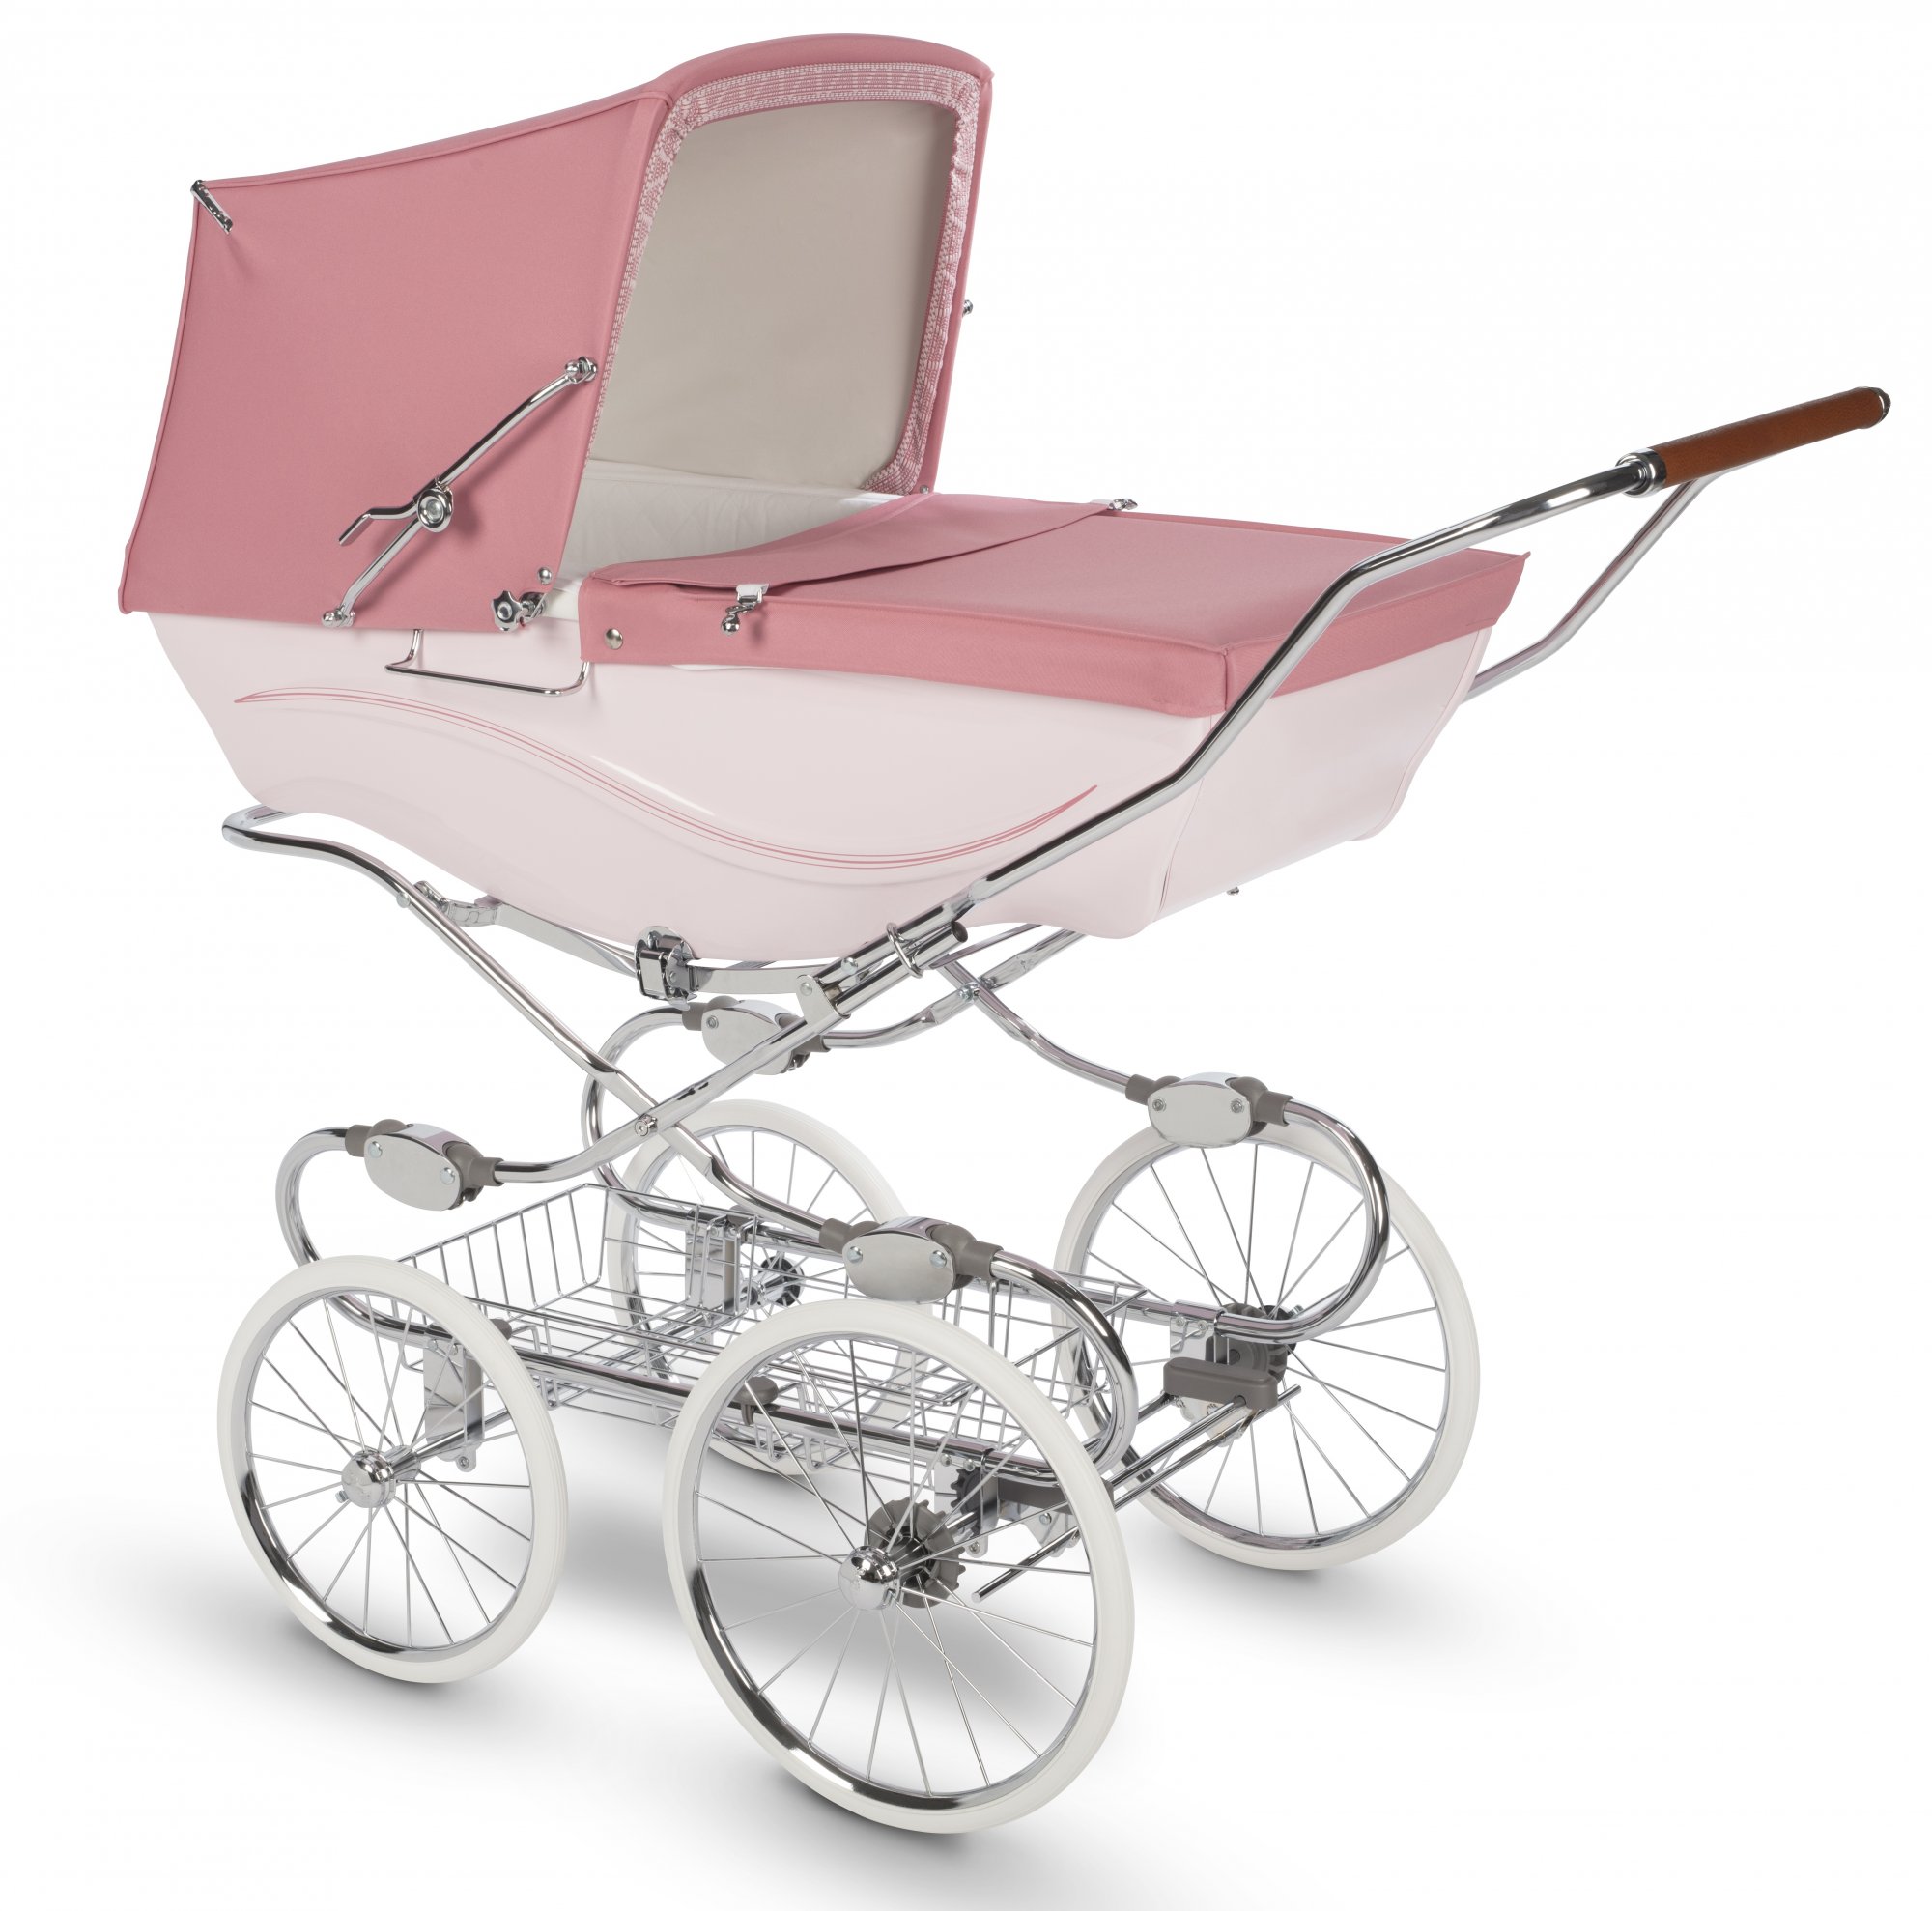 Коляски для детей 2020 года - лучшие детские коляски для ребенка в интернет магазине allformybaby.ru